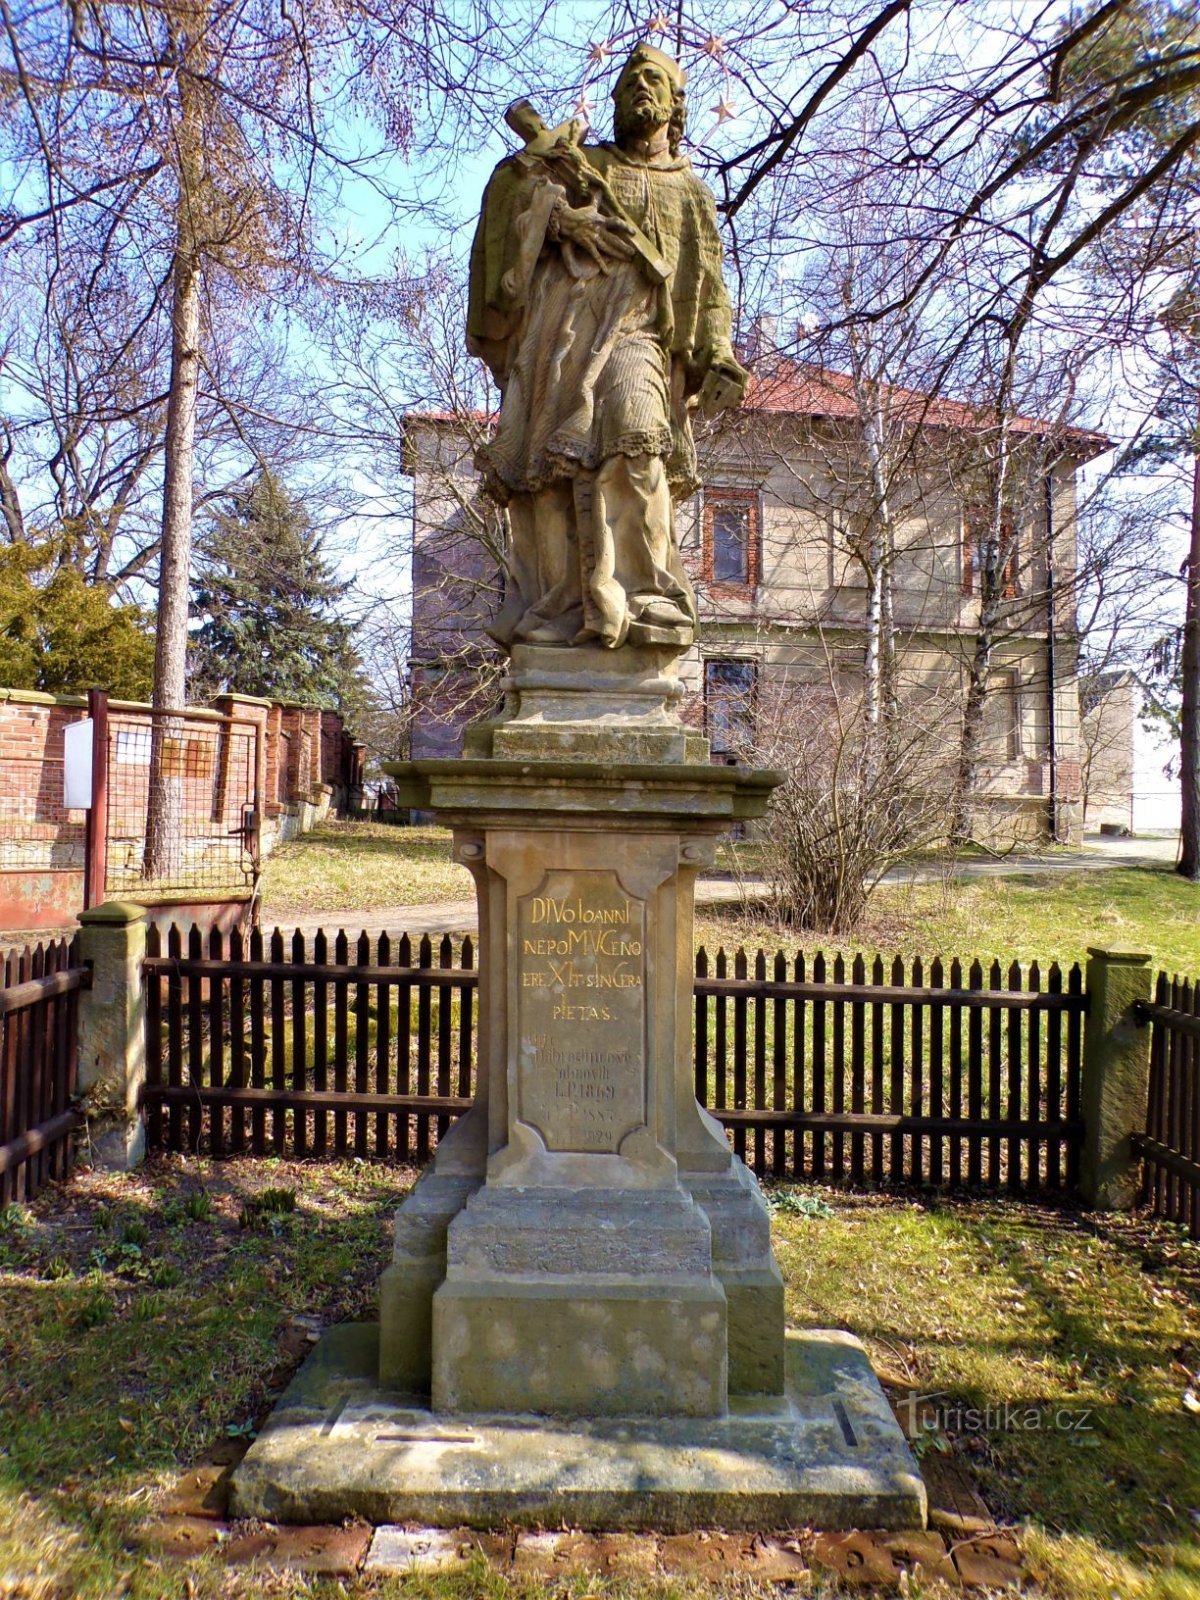 Статуя св. Іоанна Непомуцького (Чернілов, 25.3.2021)